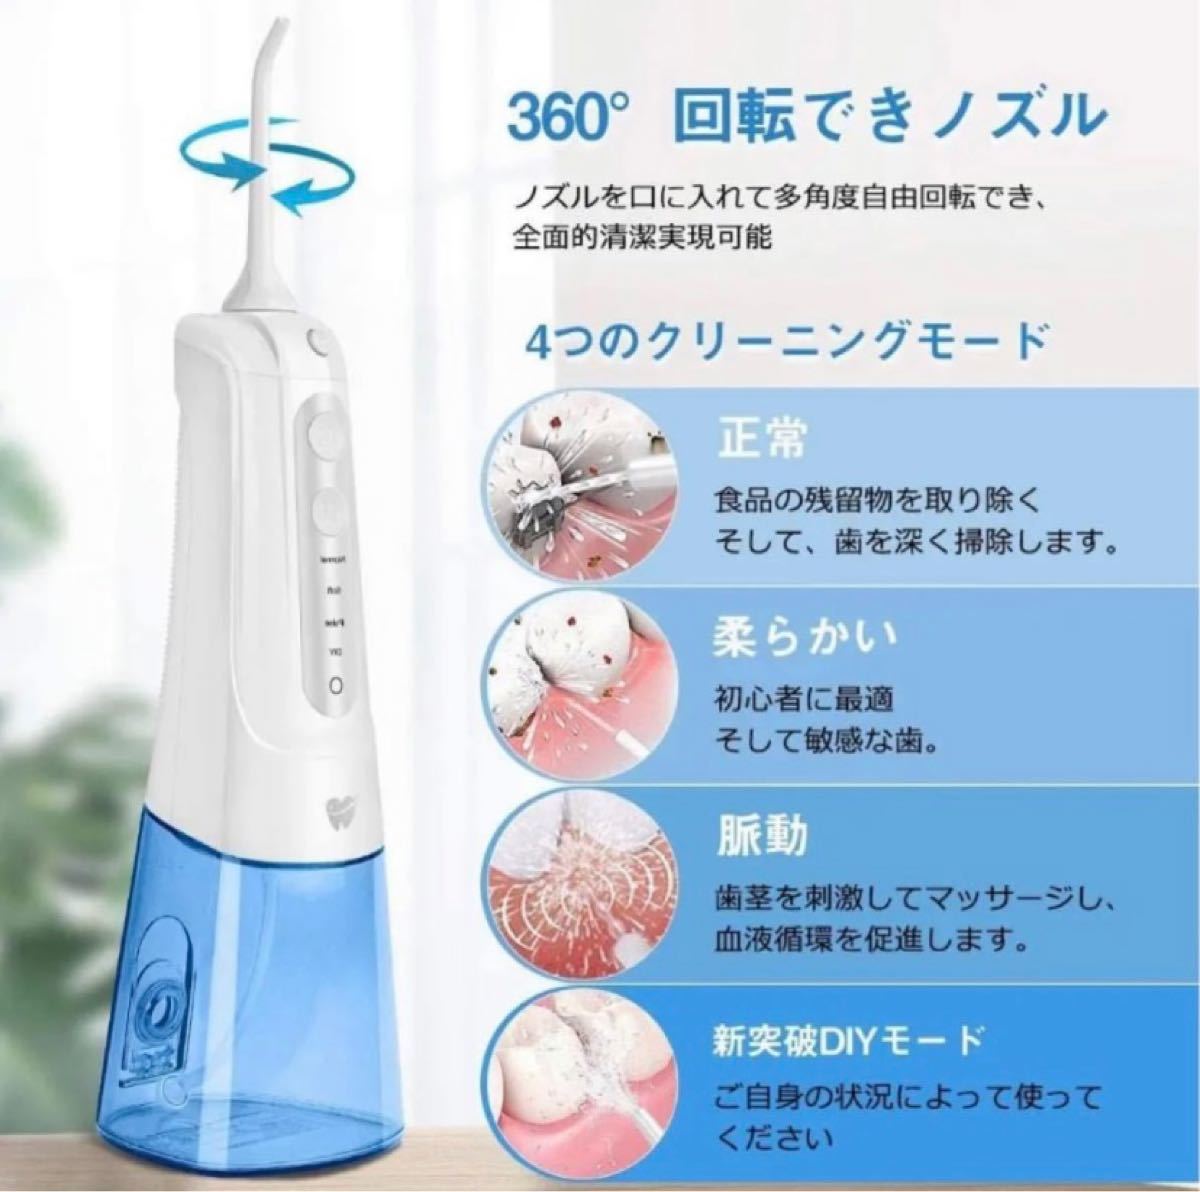 口腔洗浄器ジェットウォッシャー Keytheme4つモード調節可能 替えノズル4本口腔洗浄機 300MLUSB充電式IPX7防水 